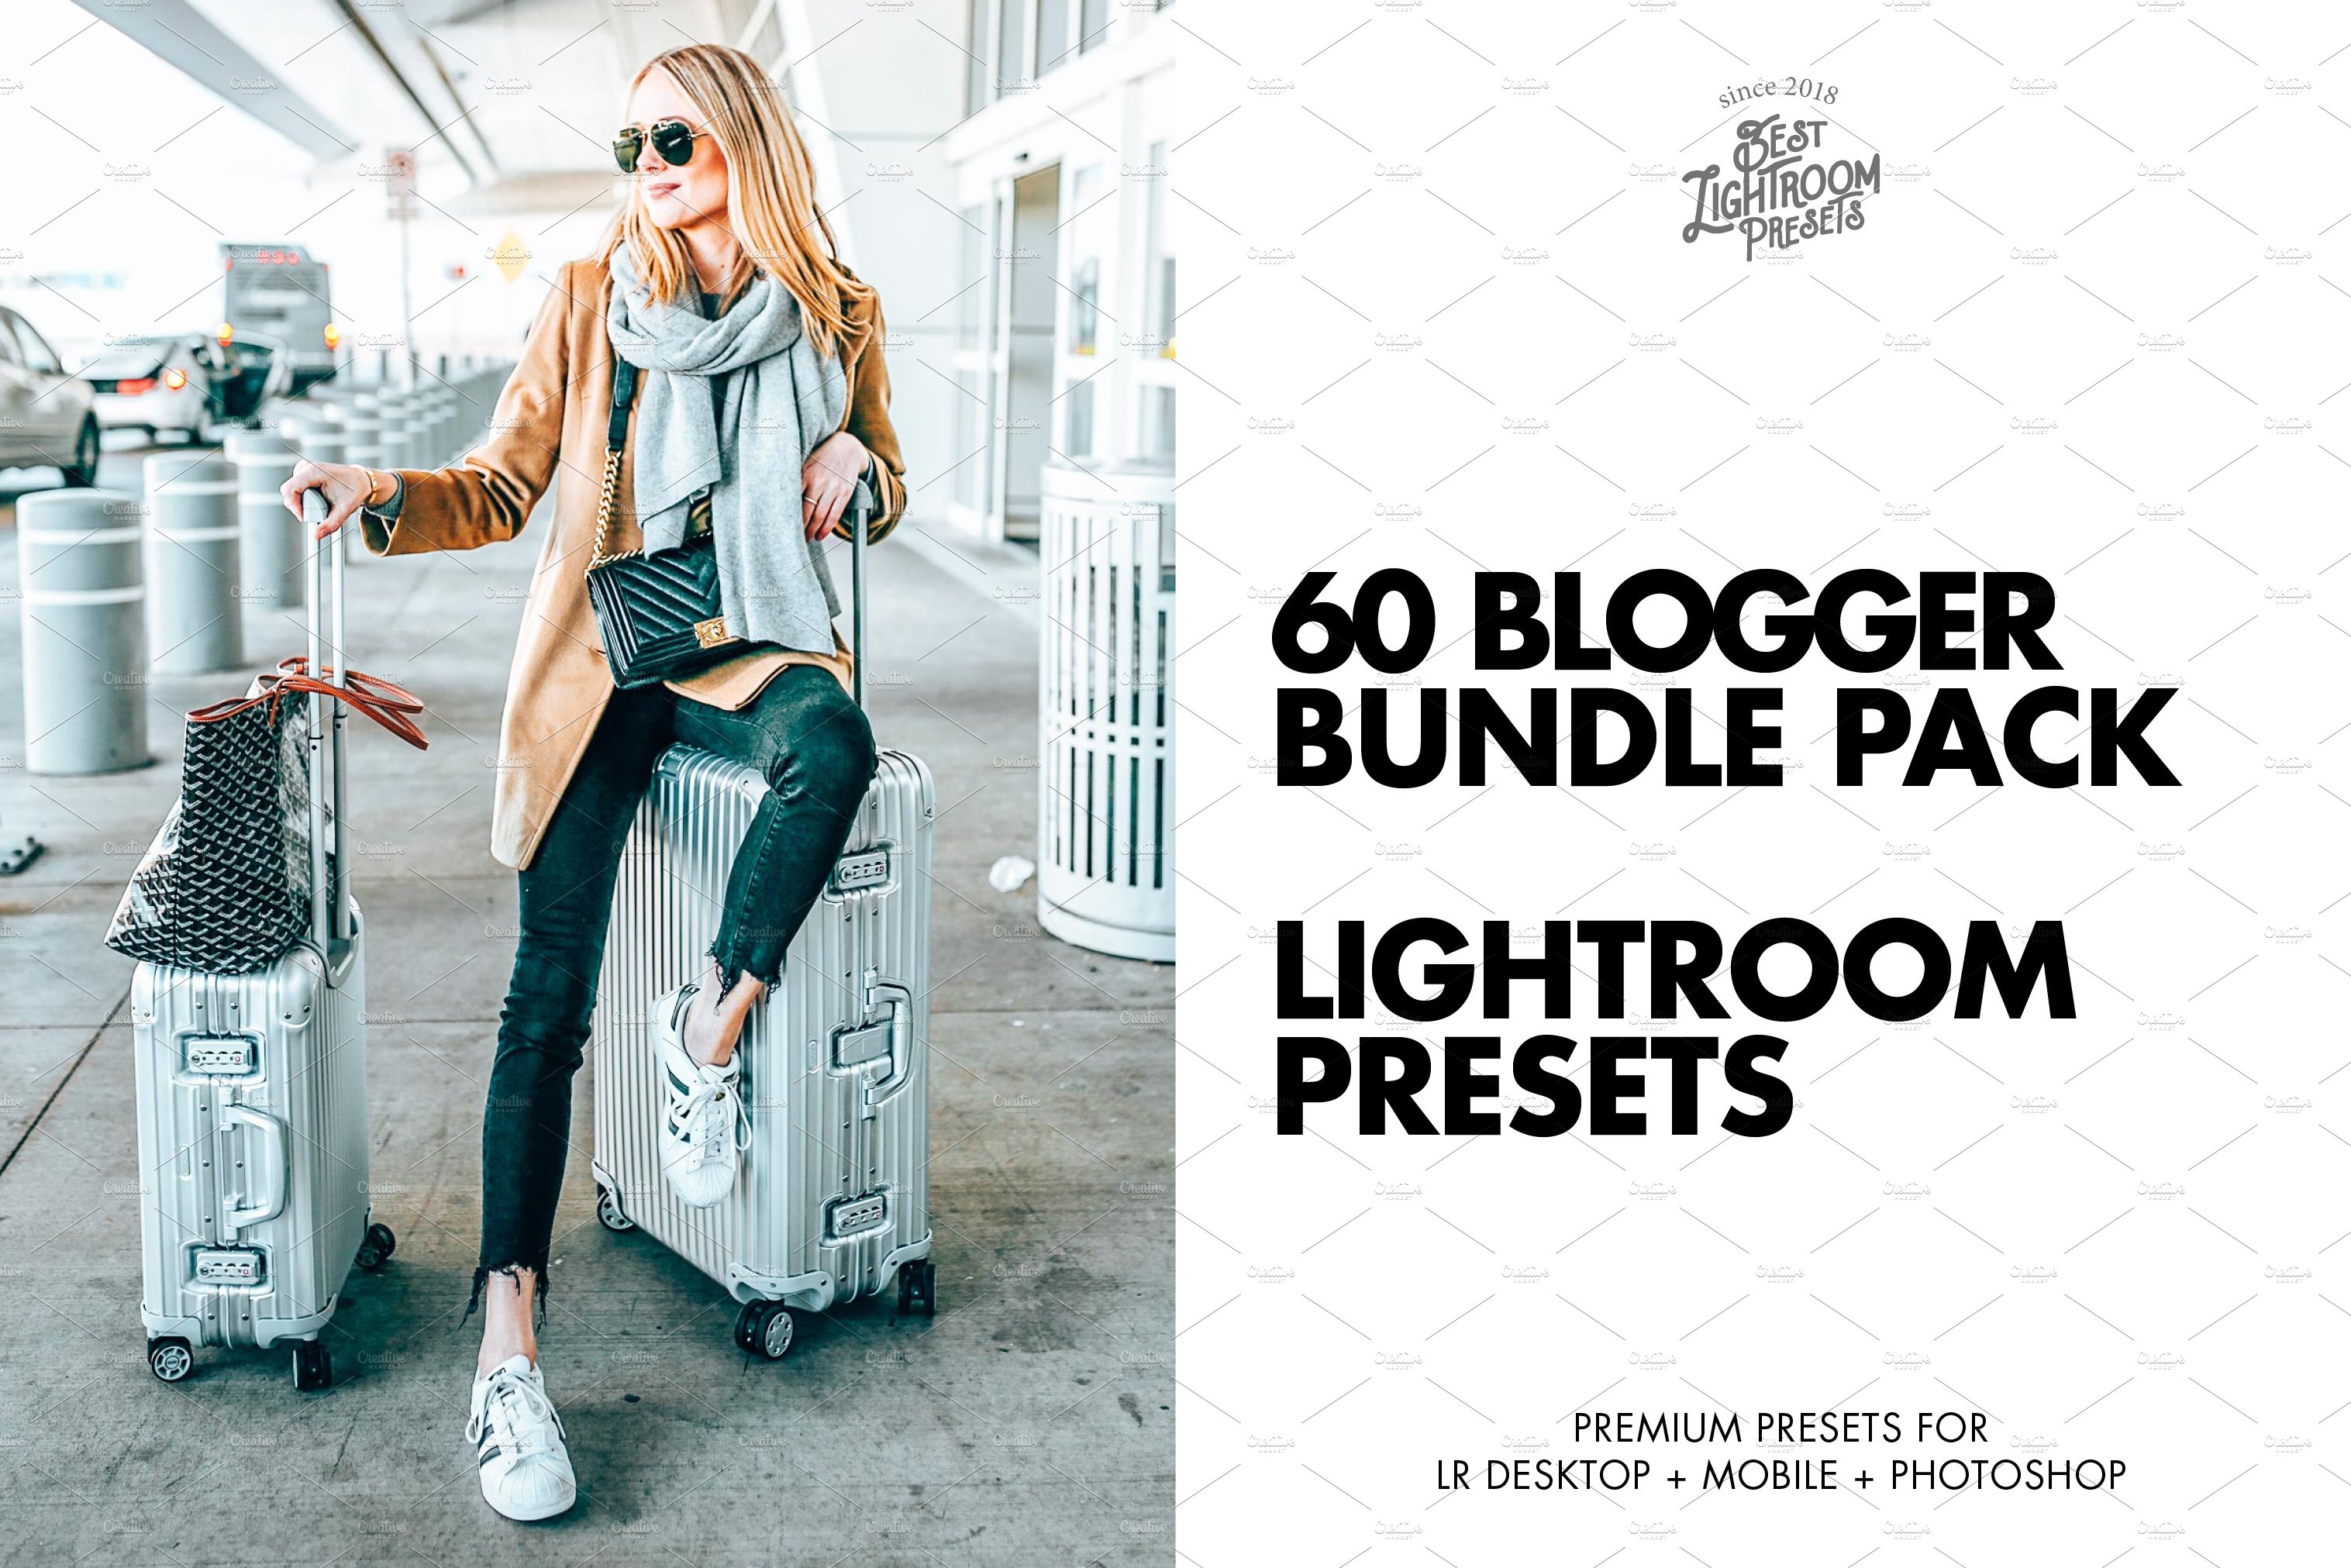 60 Lightroom presets Bloggers Bundlecover image.